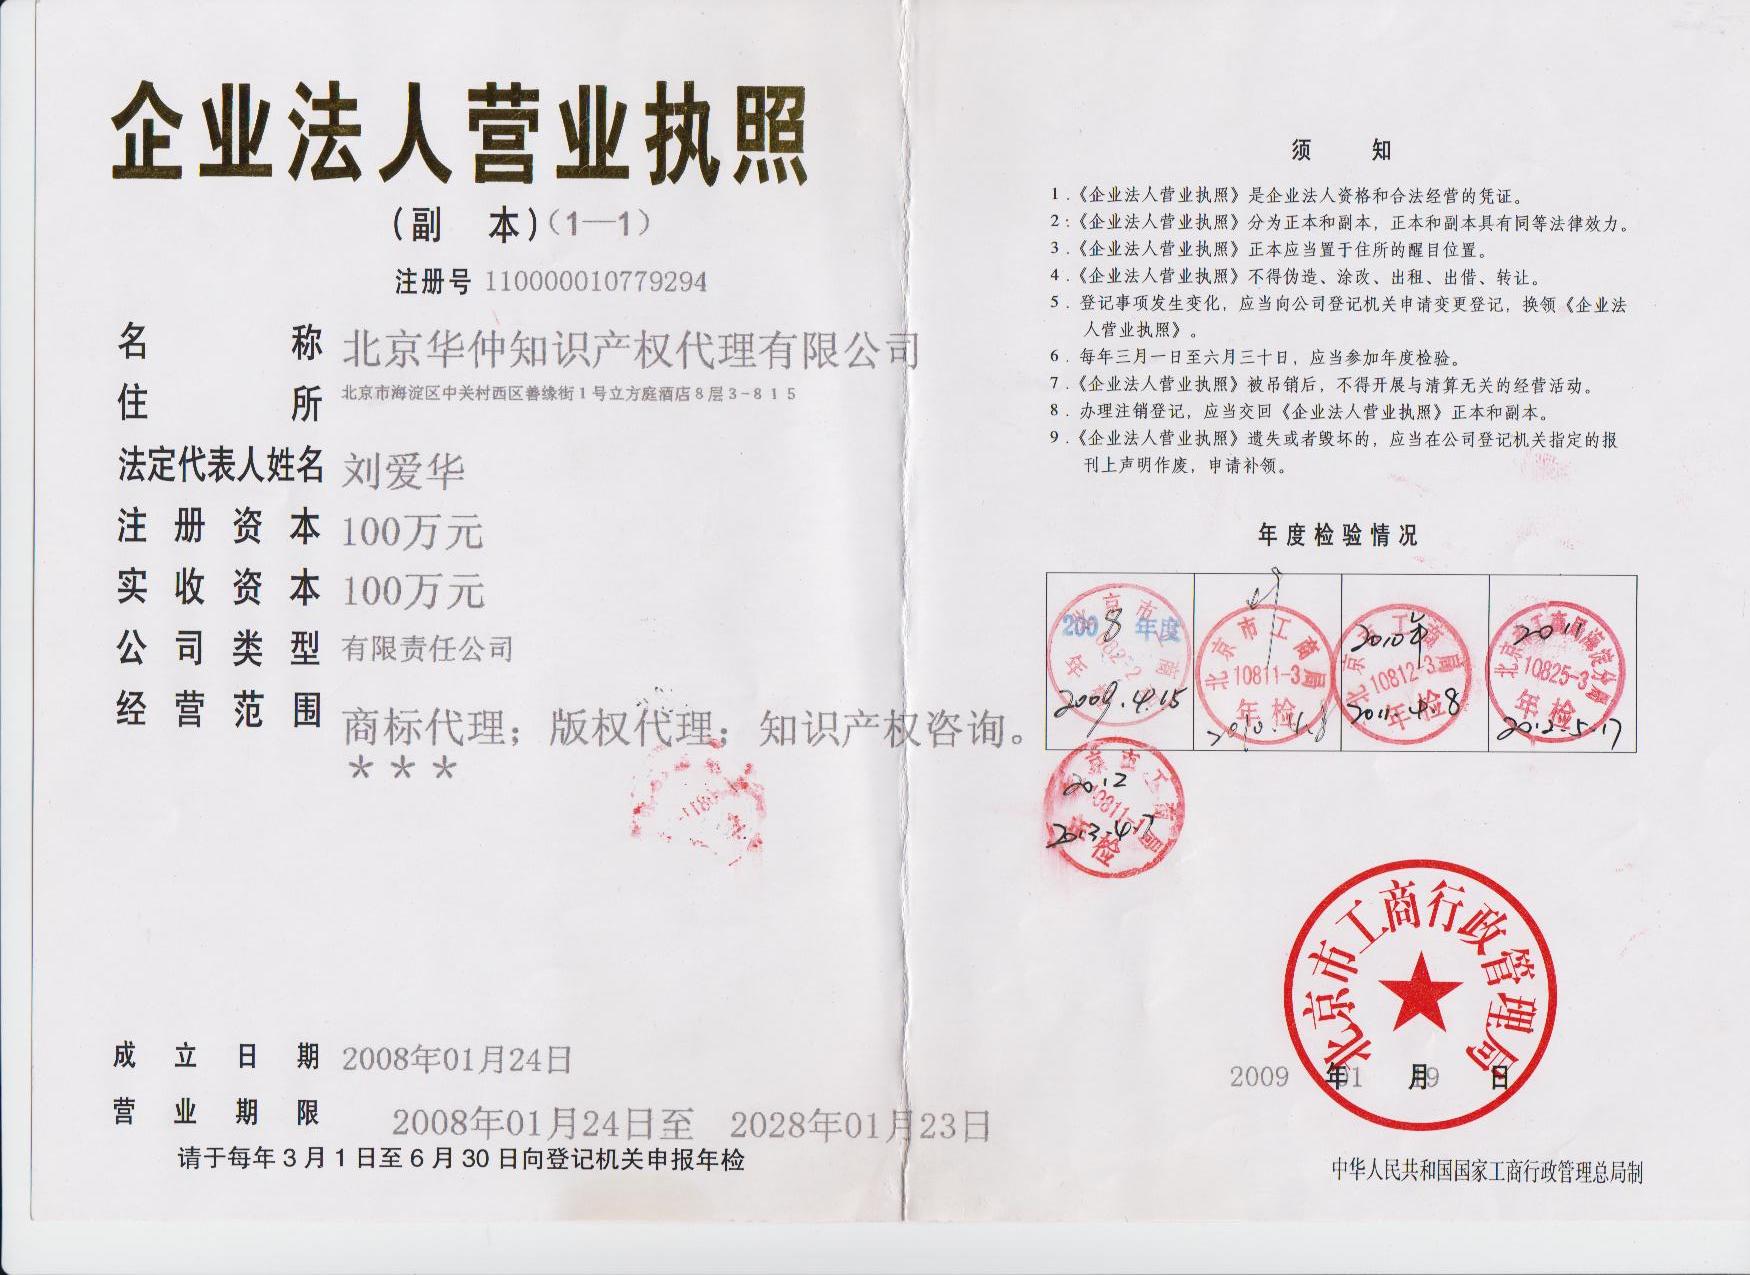 商标注册 北京专业代理服务